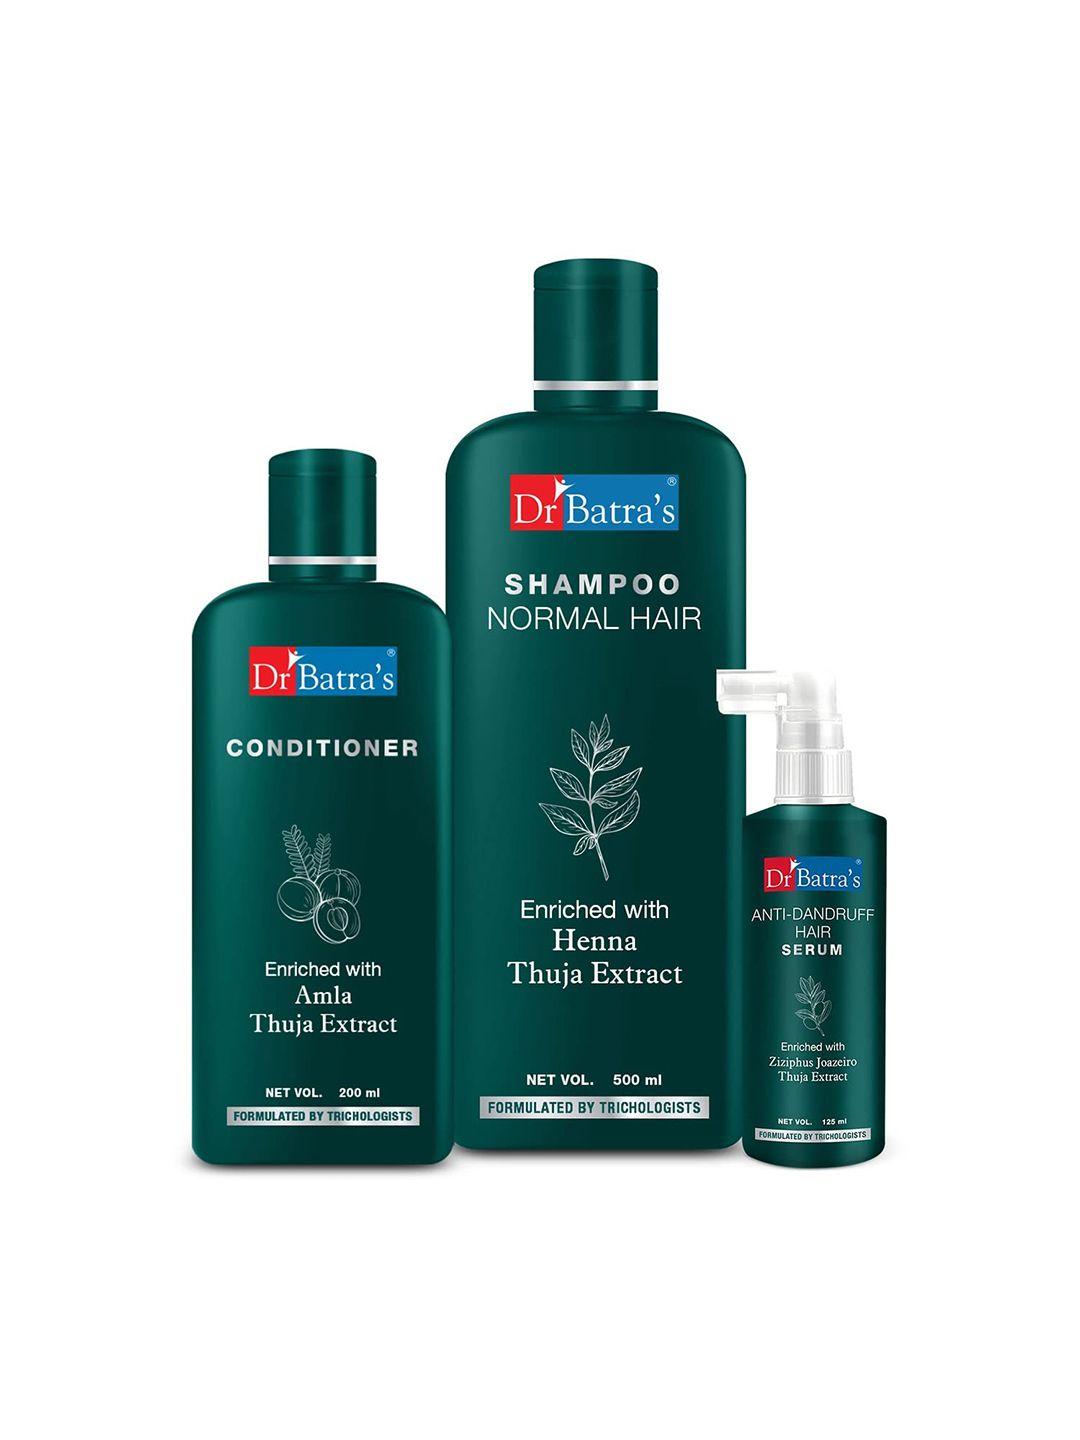 dr. batras anti dandruff hair serum 125ml + conditioner 200ml & normal hair shampoo 500ml